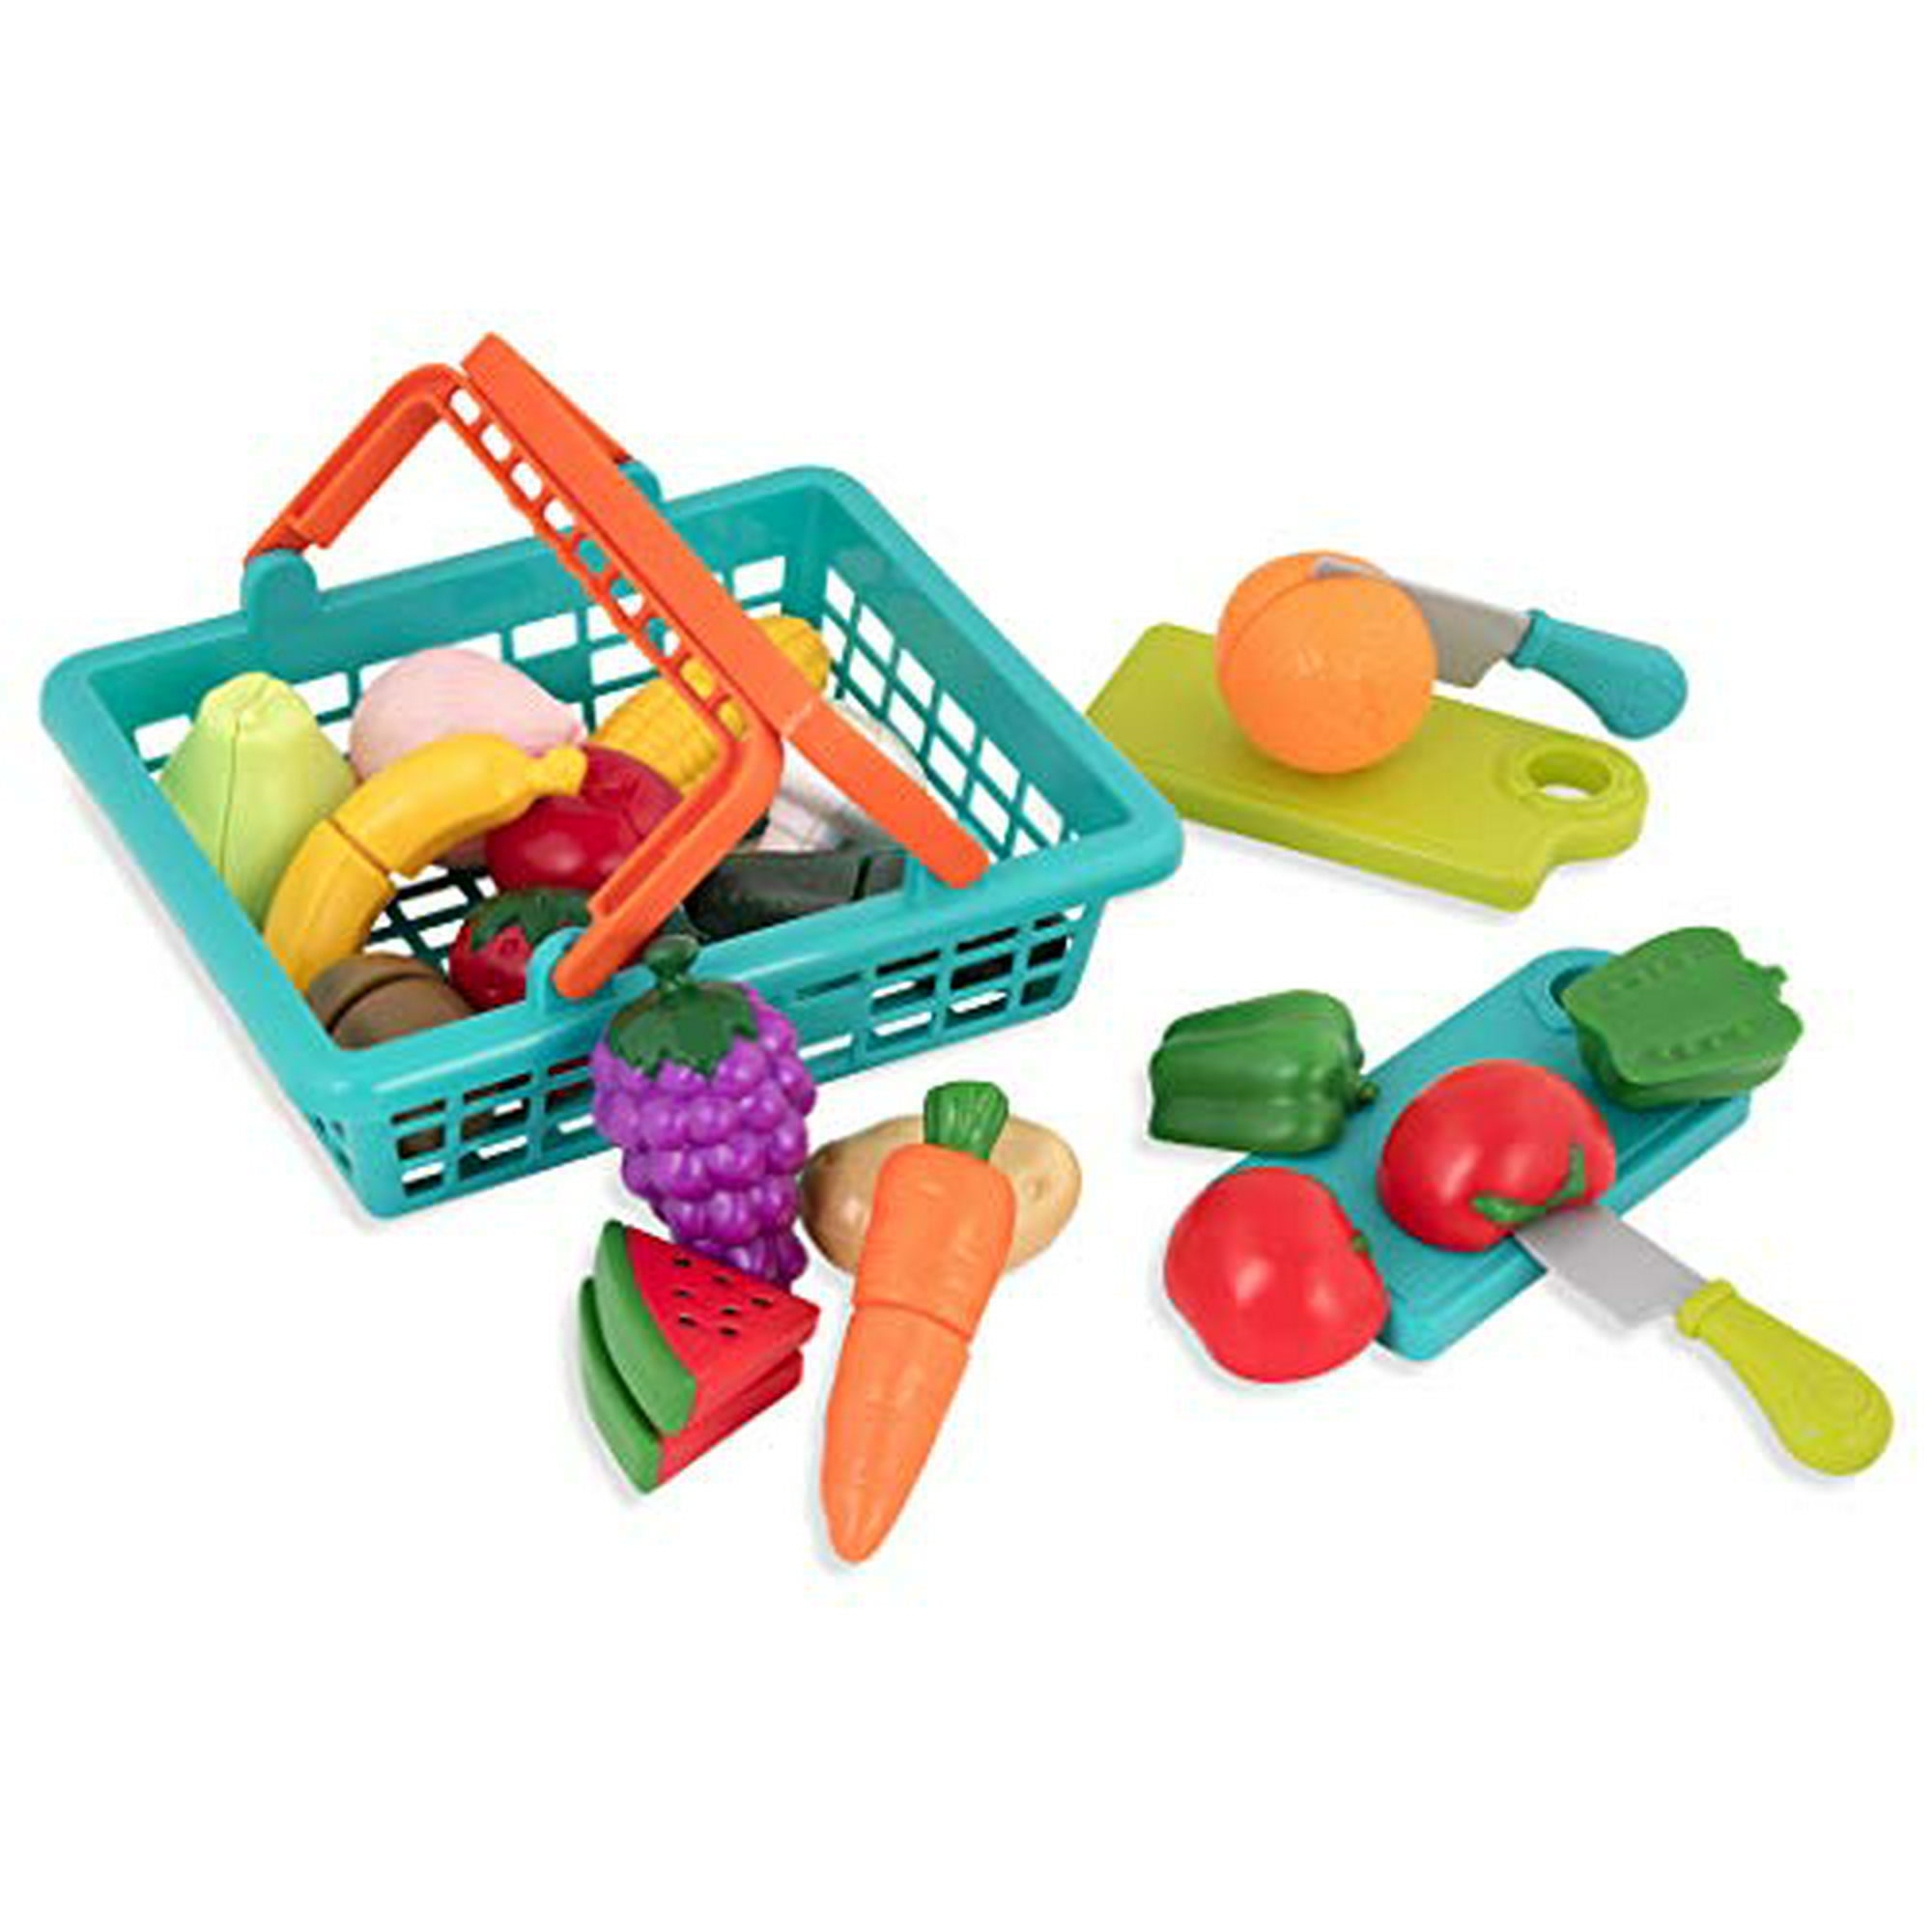 Battat - Cesta de mercado de agricultores - Accesorios de cocina de juguete  - Juego de comida para niños de 3 años o más (37 piezas) Battat  0062243334441